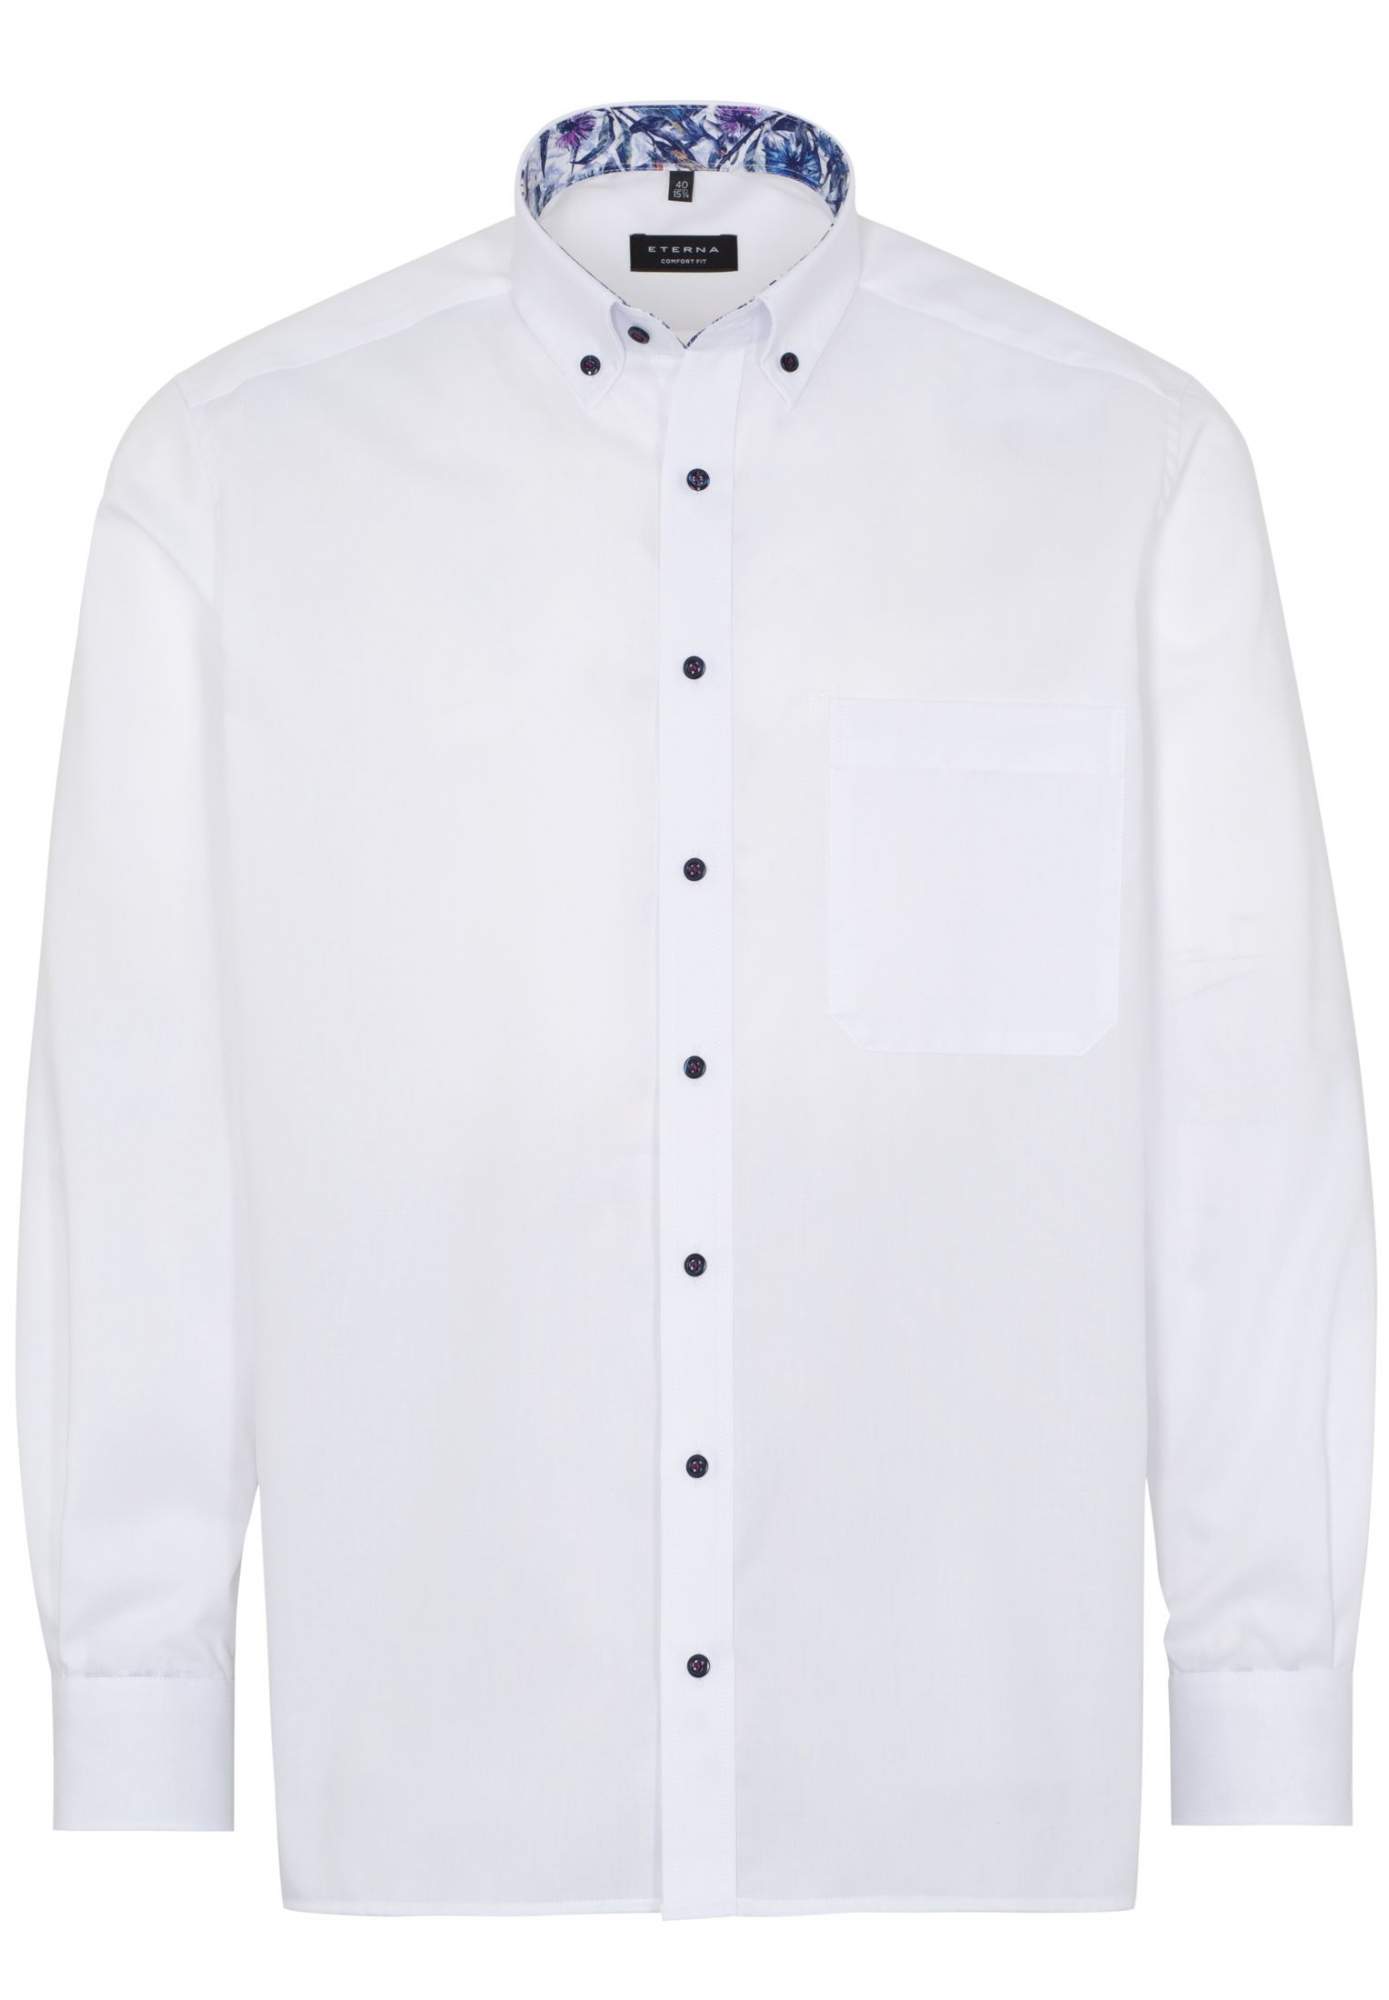 Рубашка мужская ETERNA 8102-00-E144 белая 41 - купить в Икона Стиля, цена на Мегамаркет